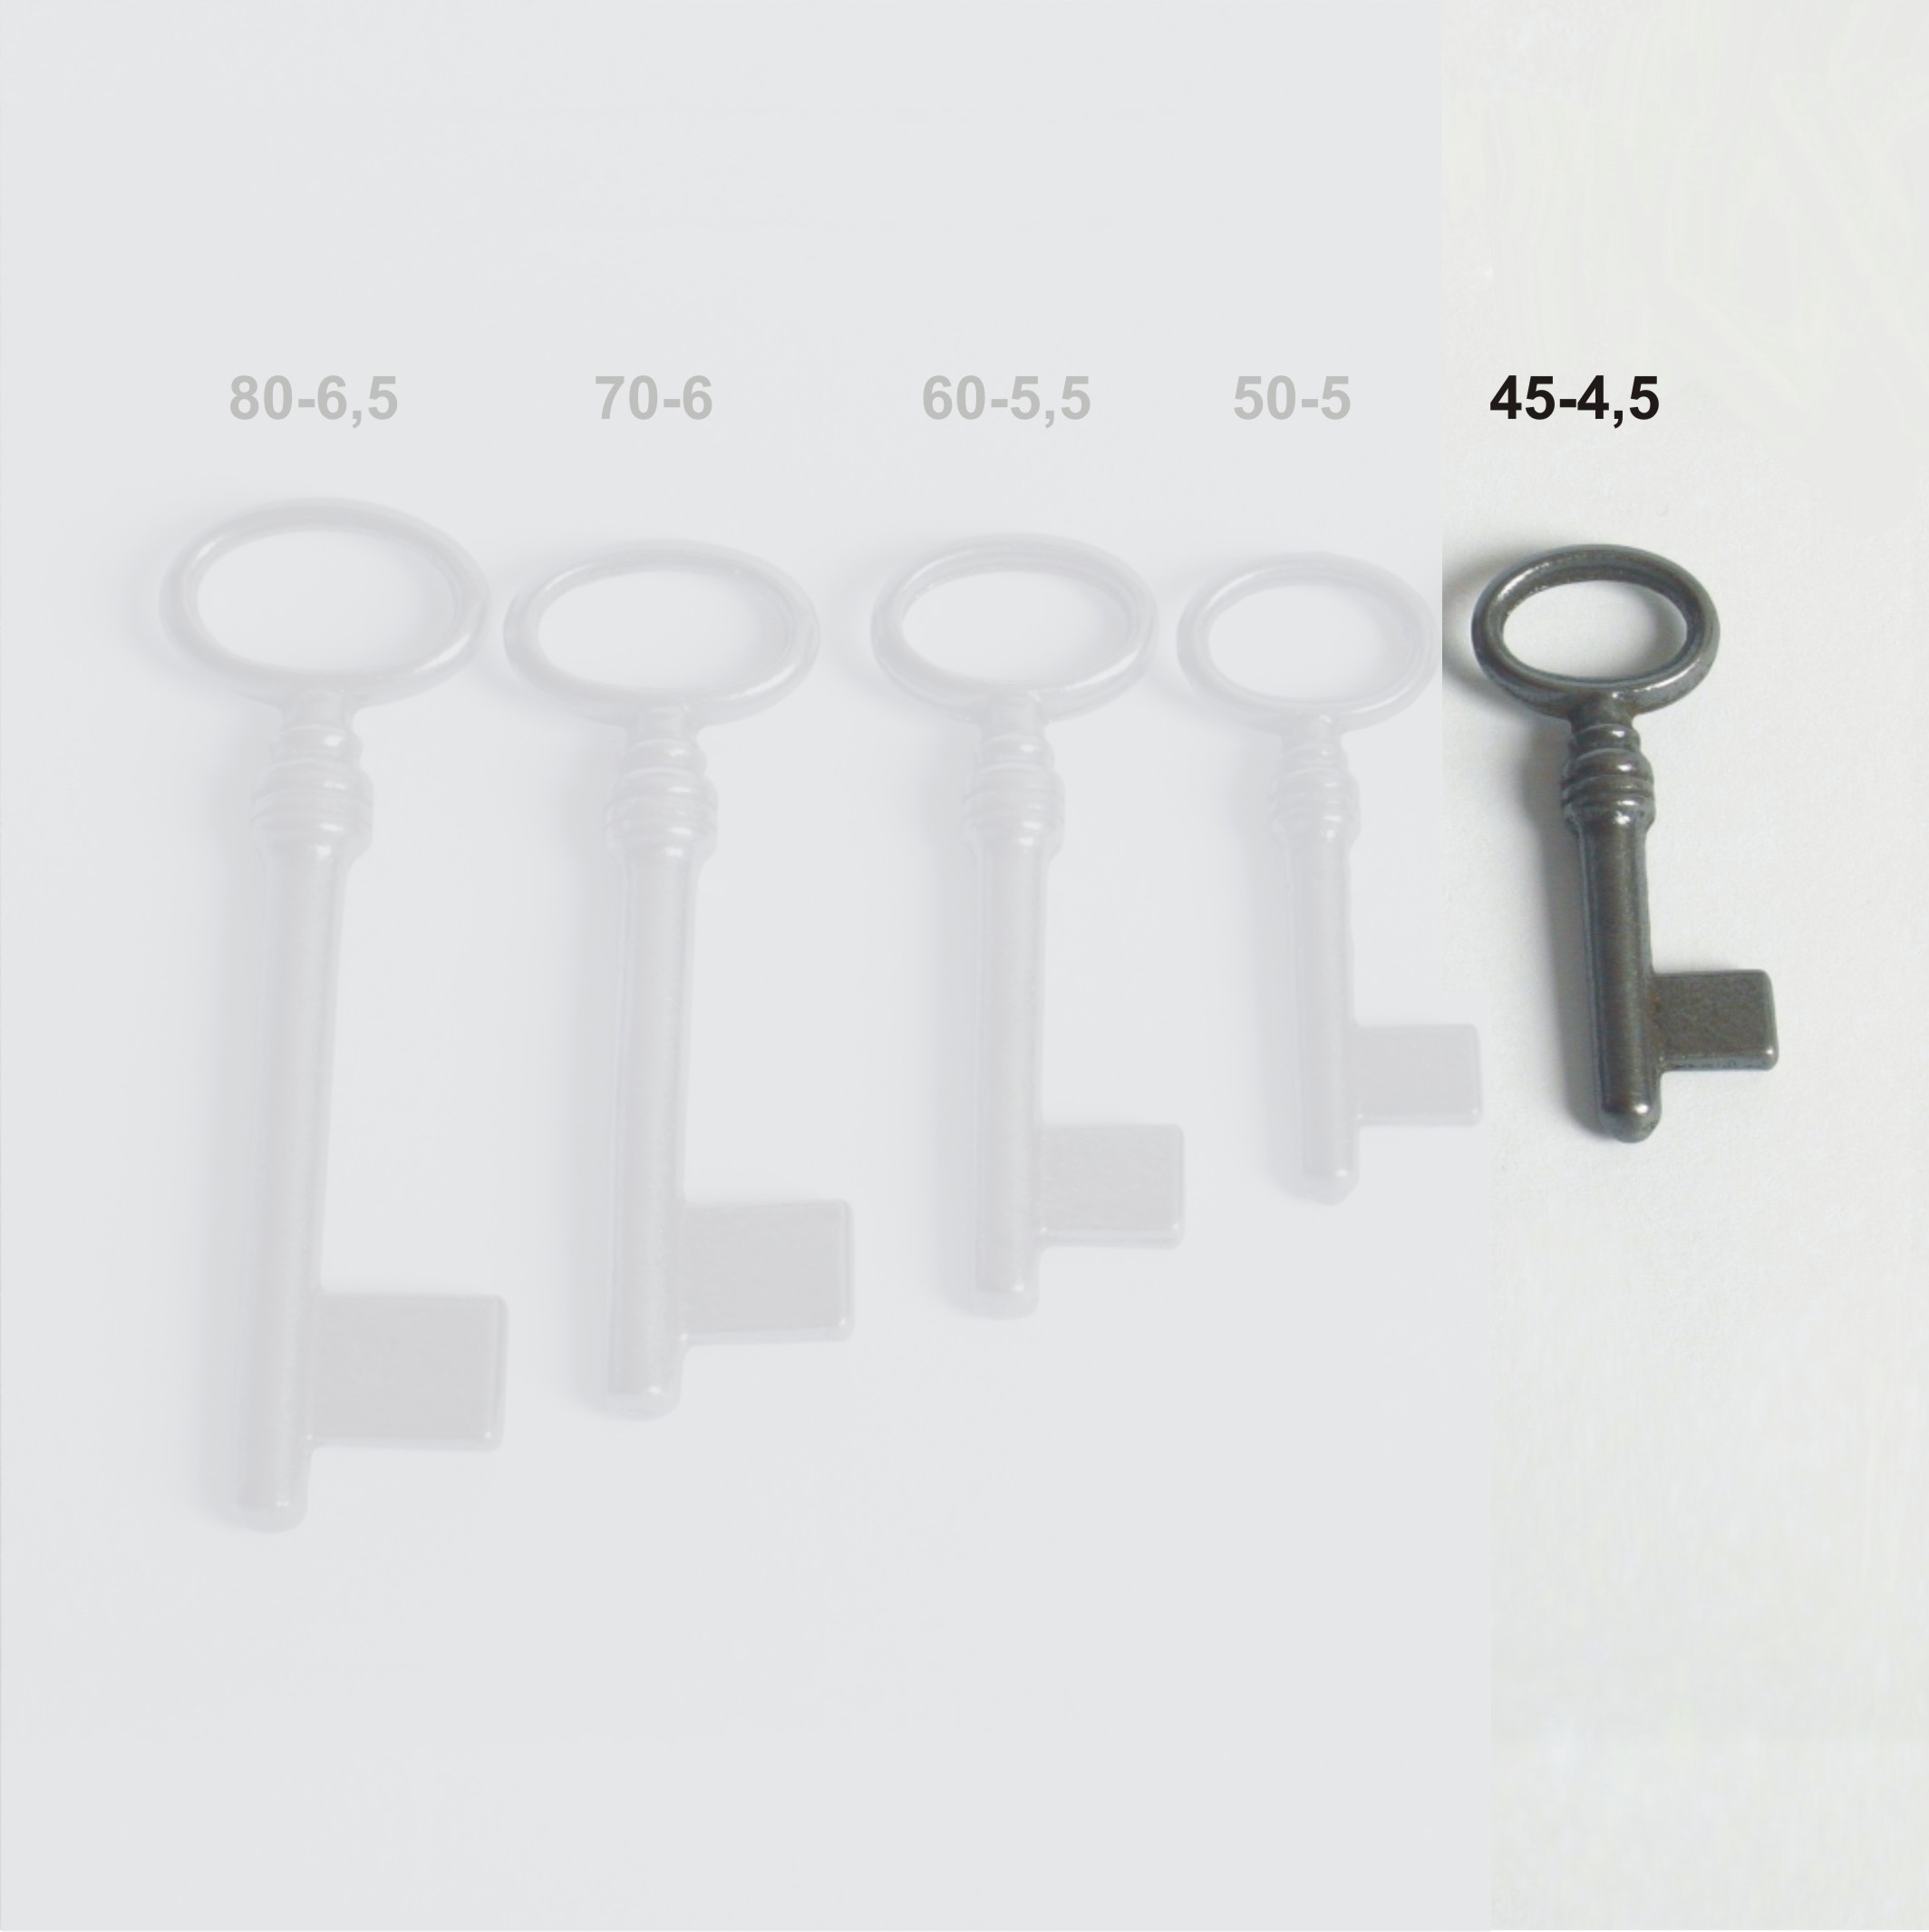 Vollschlüssel aus Eisen GL45 HD4,5 mm der Serie VS001